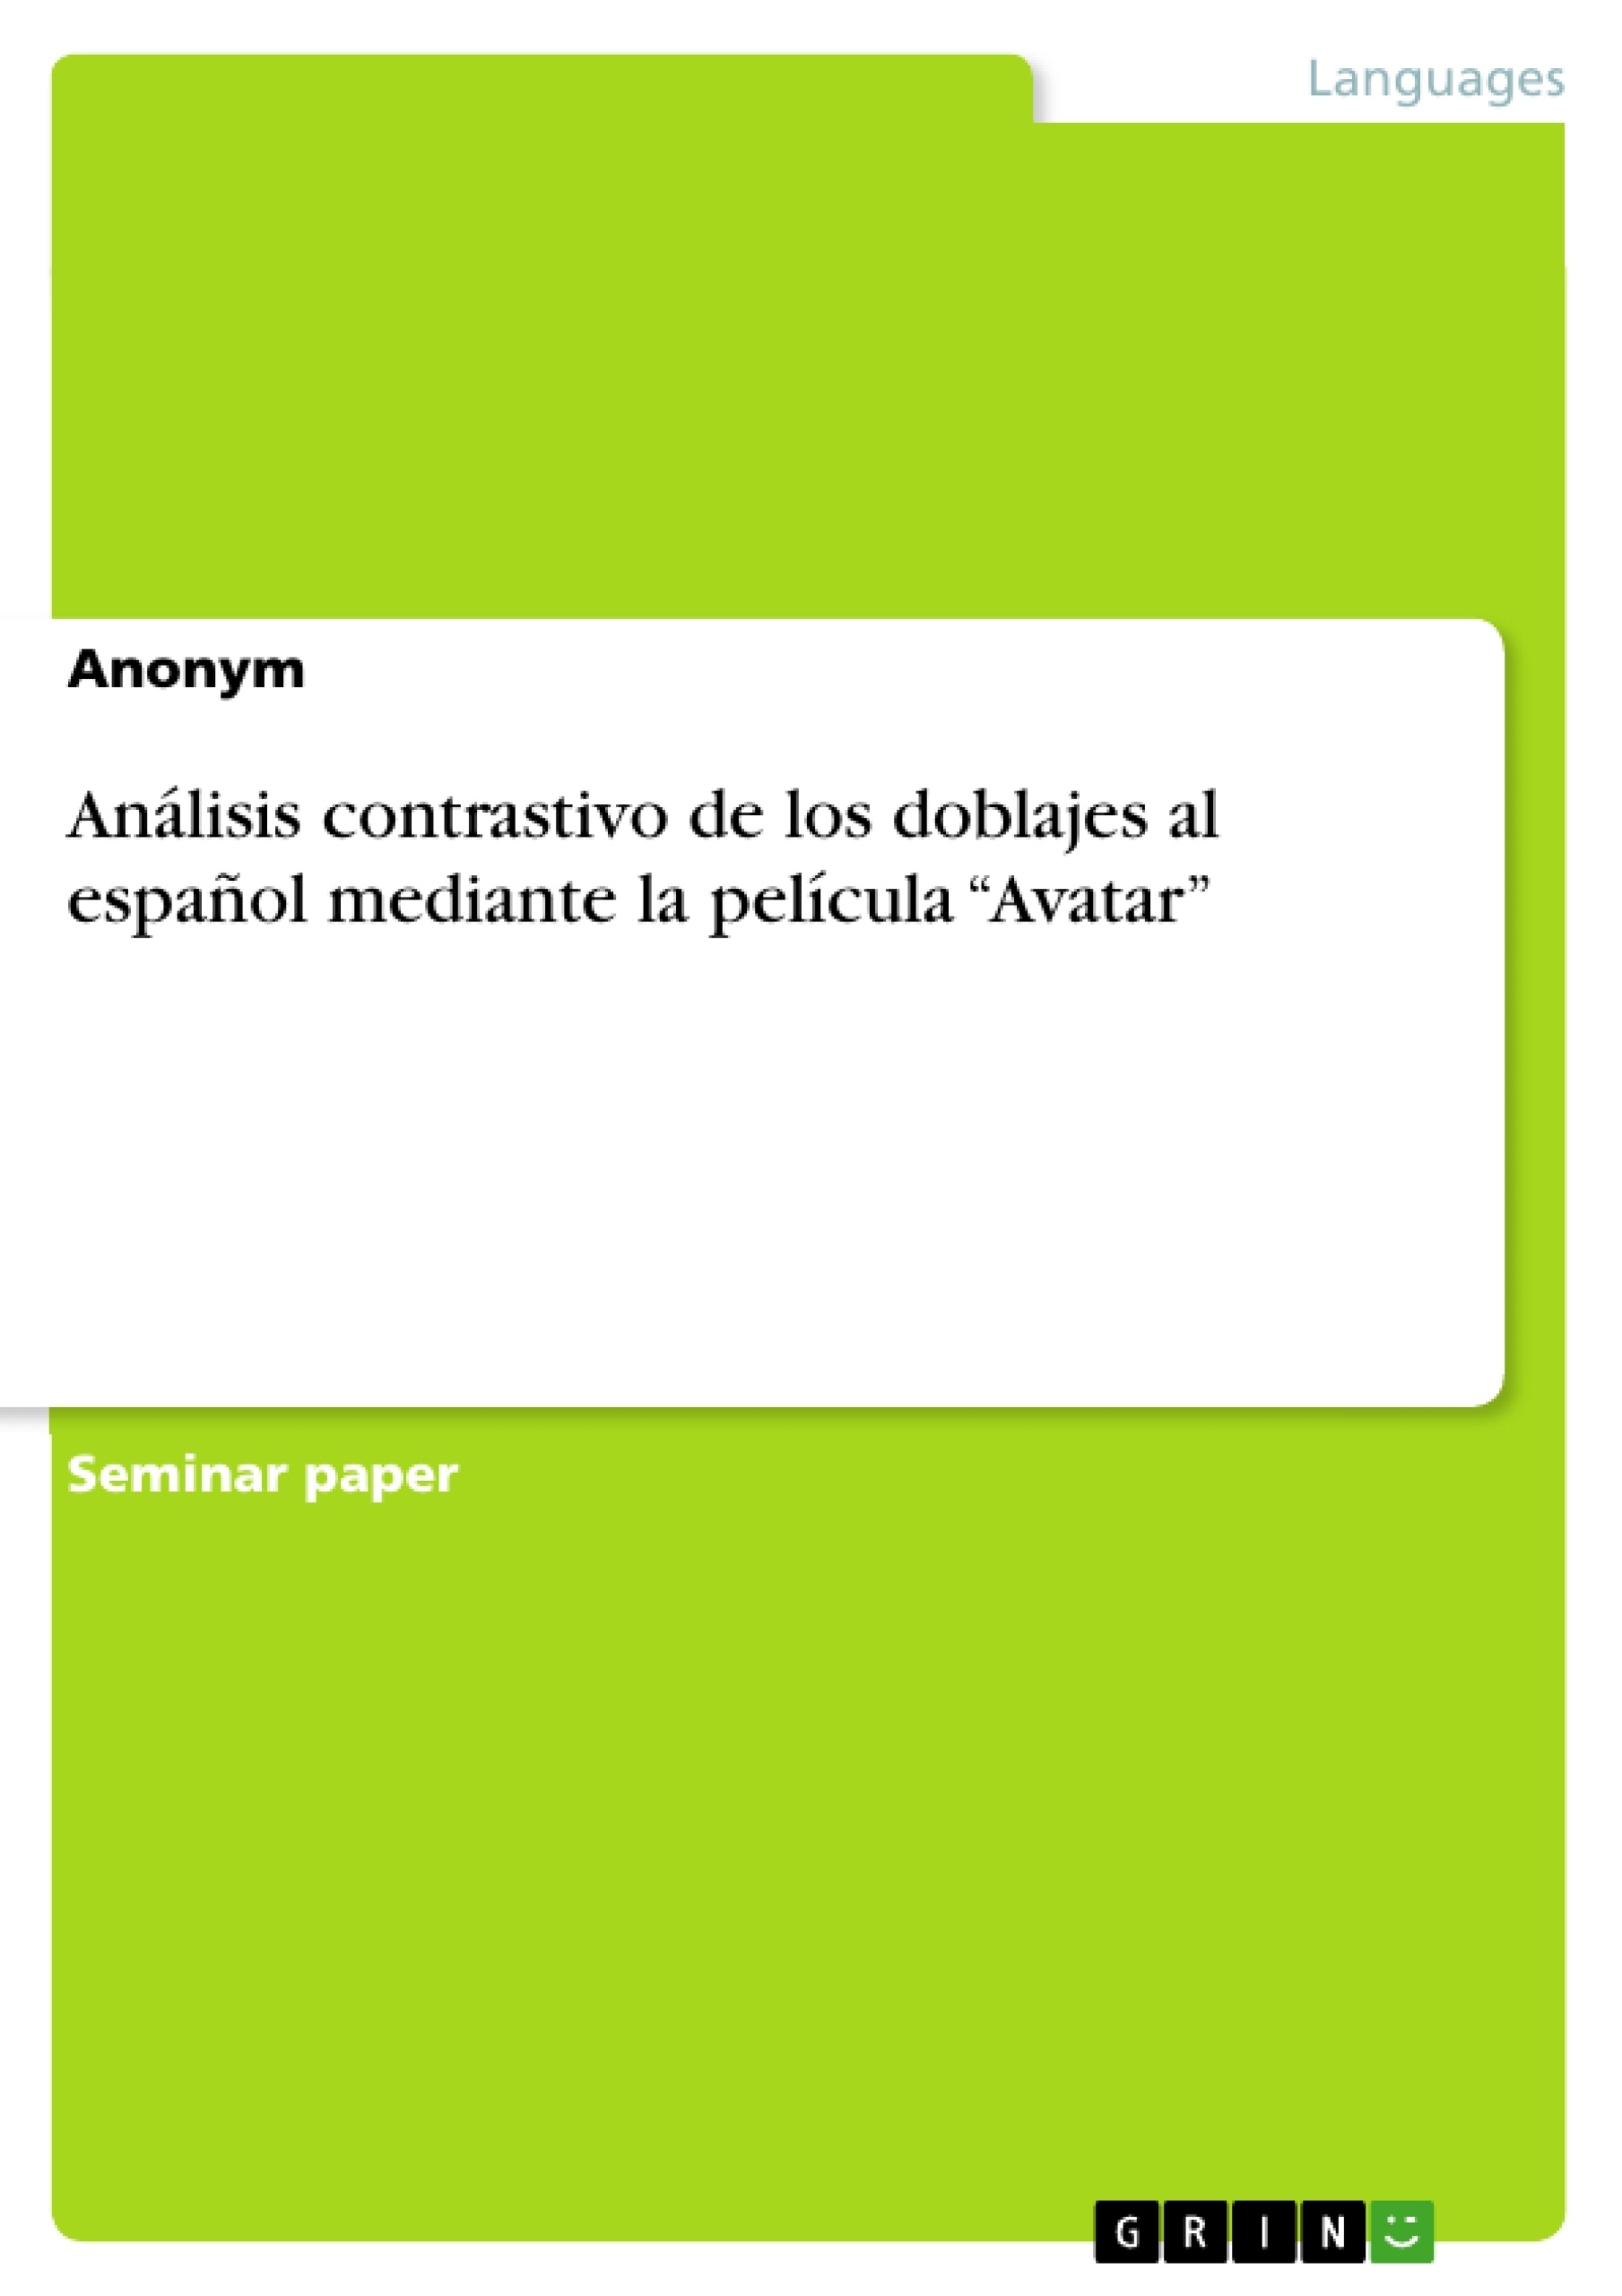 Título: Análisis contrastivo de los doblajes al español mediante la película “Avatar”